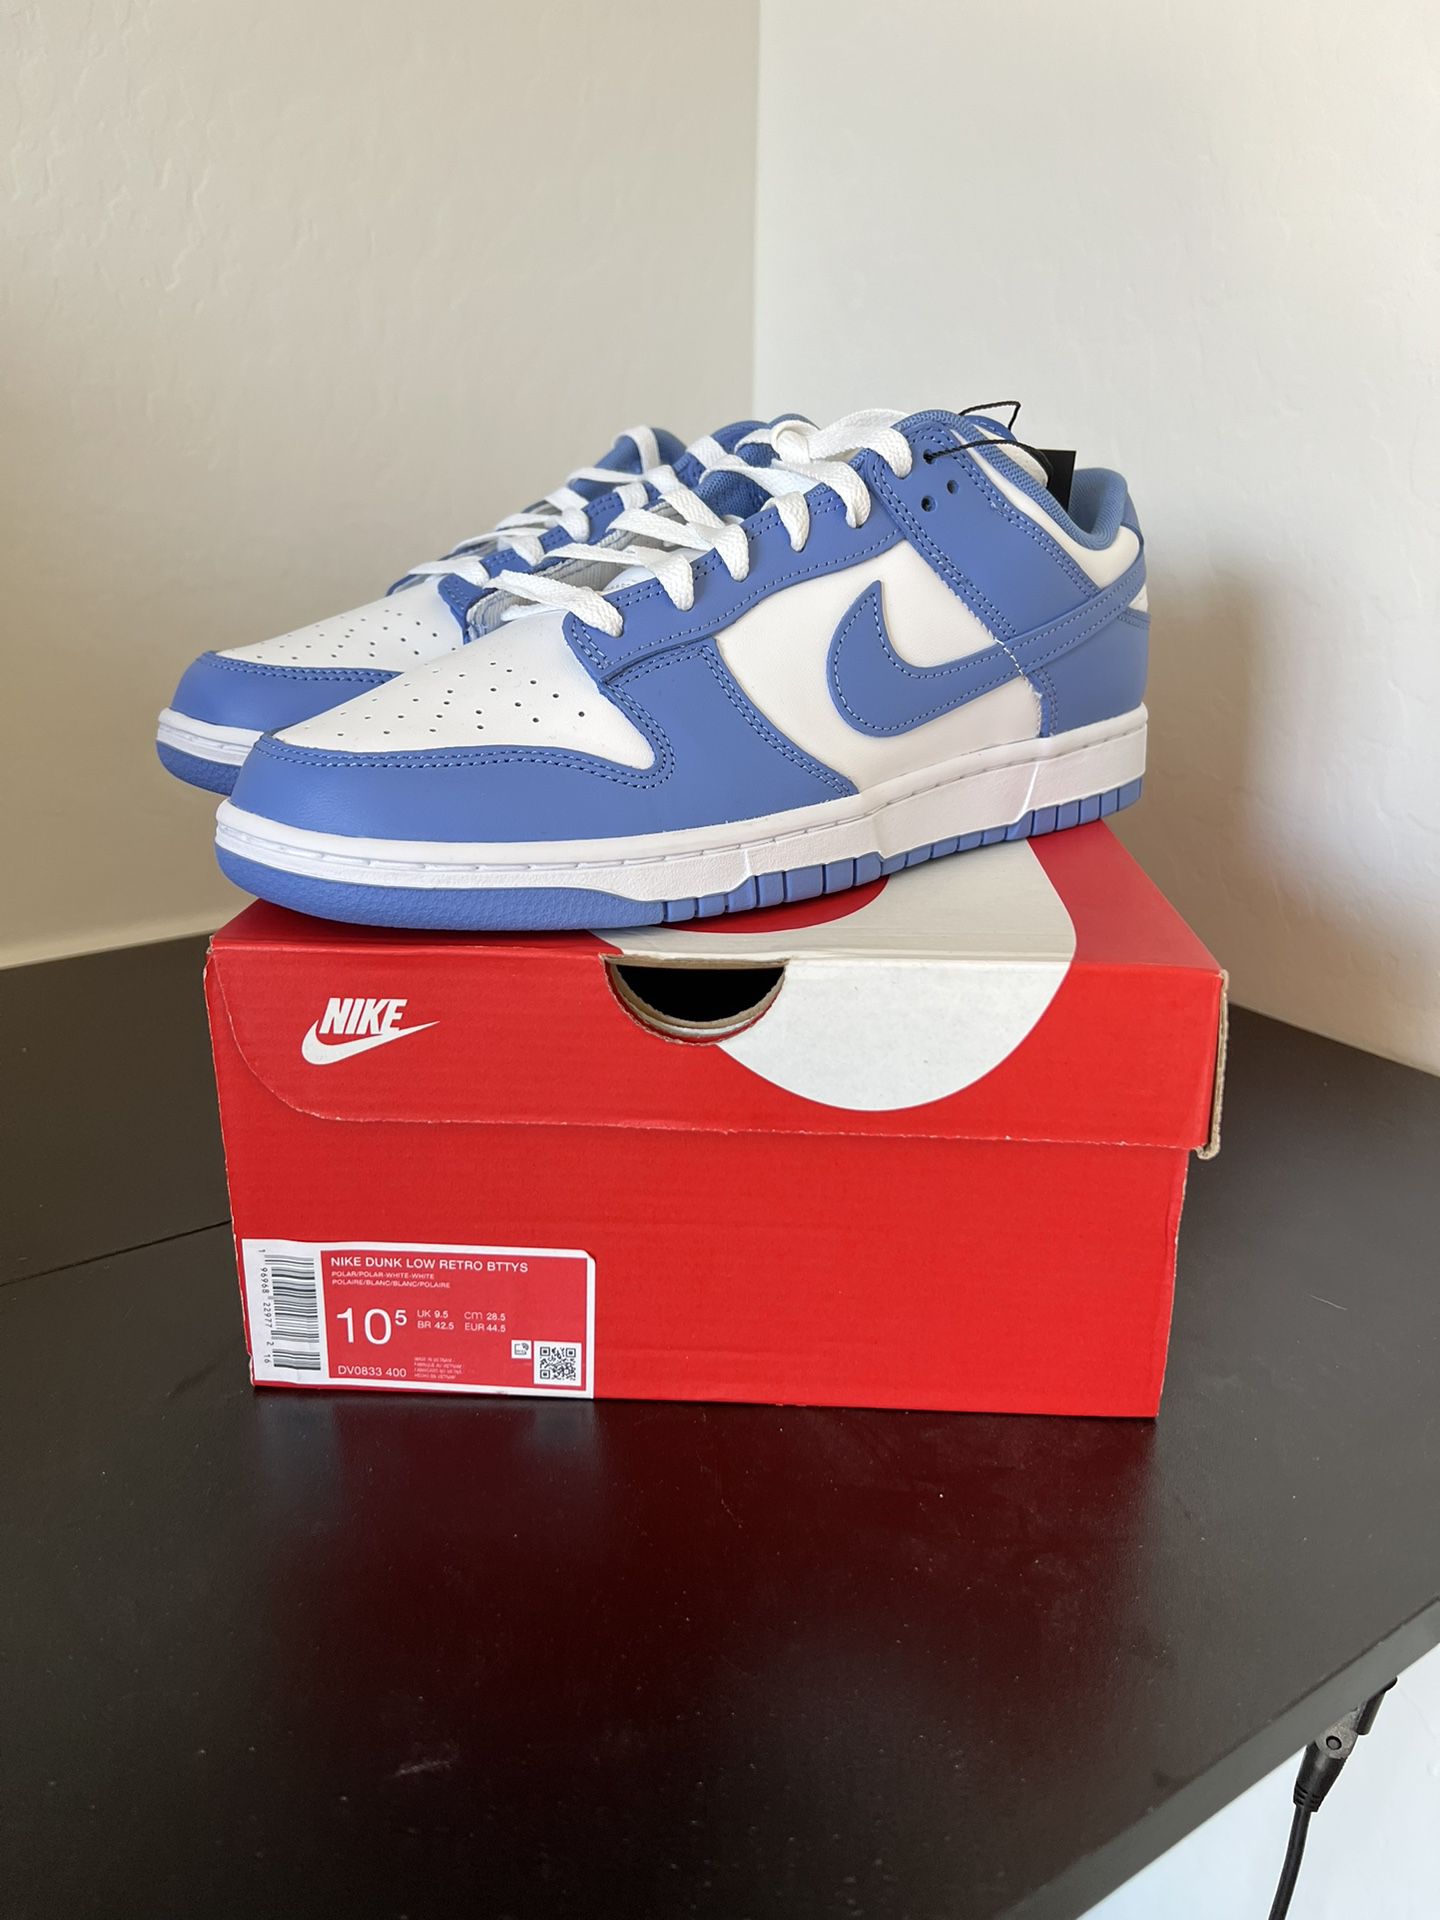 Nike Dunk Low “Polar Blue” Size 10.5M